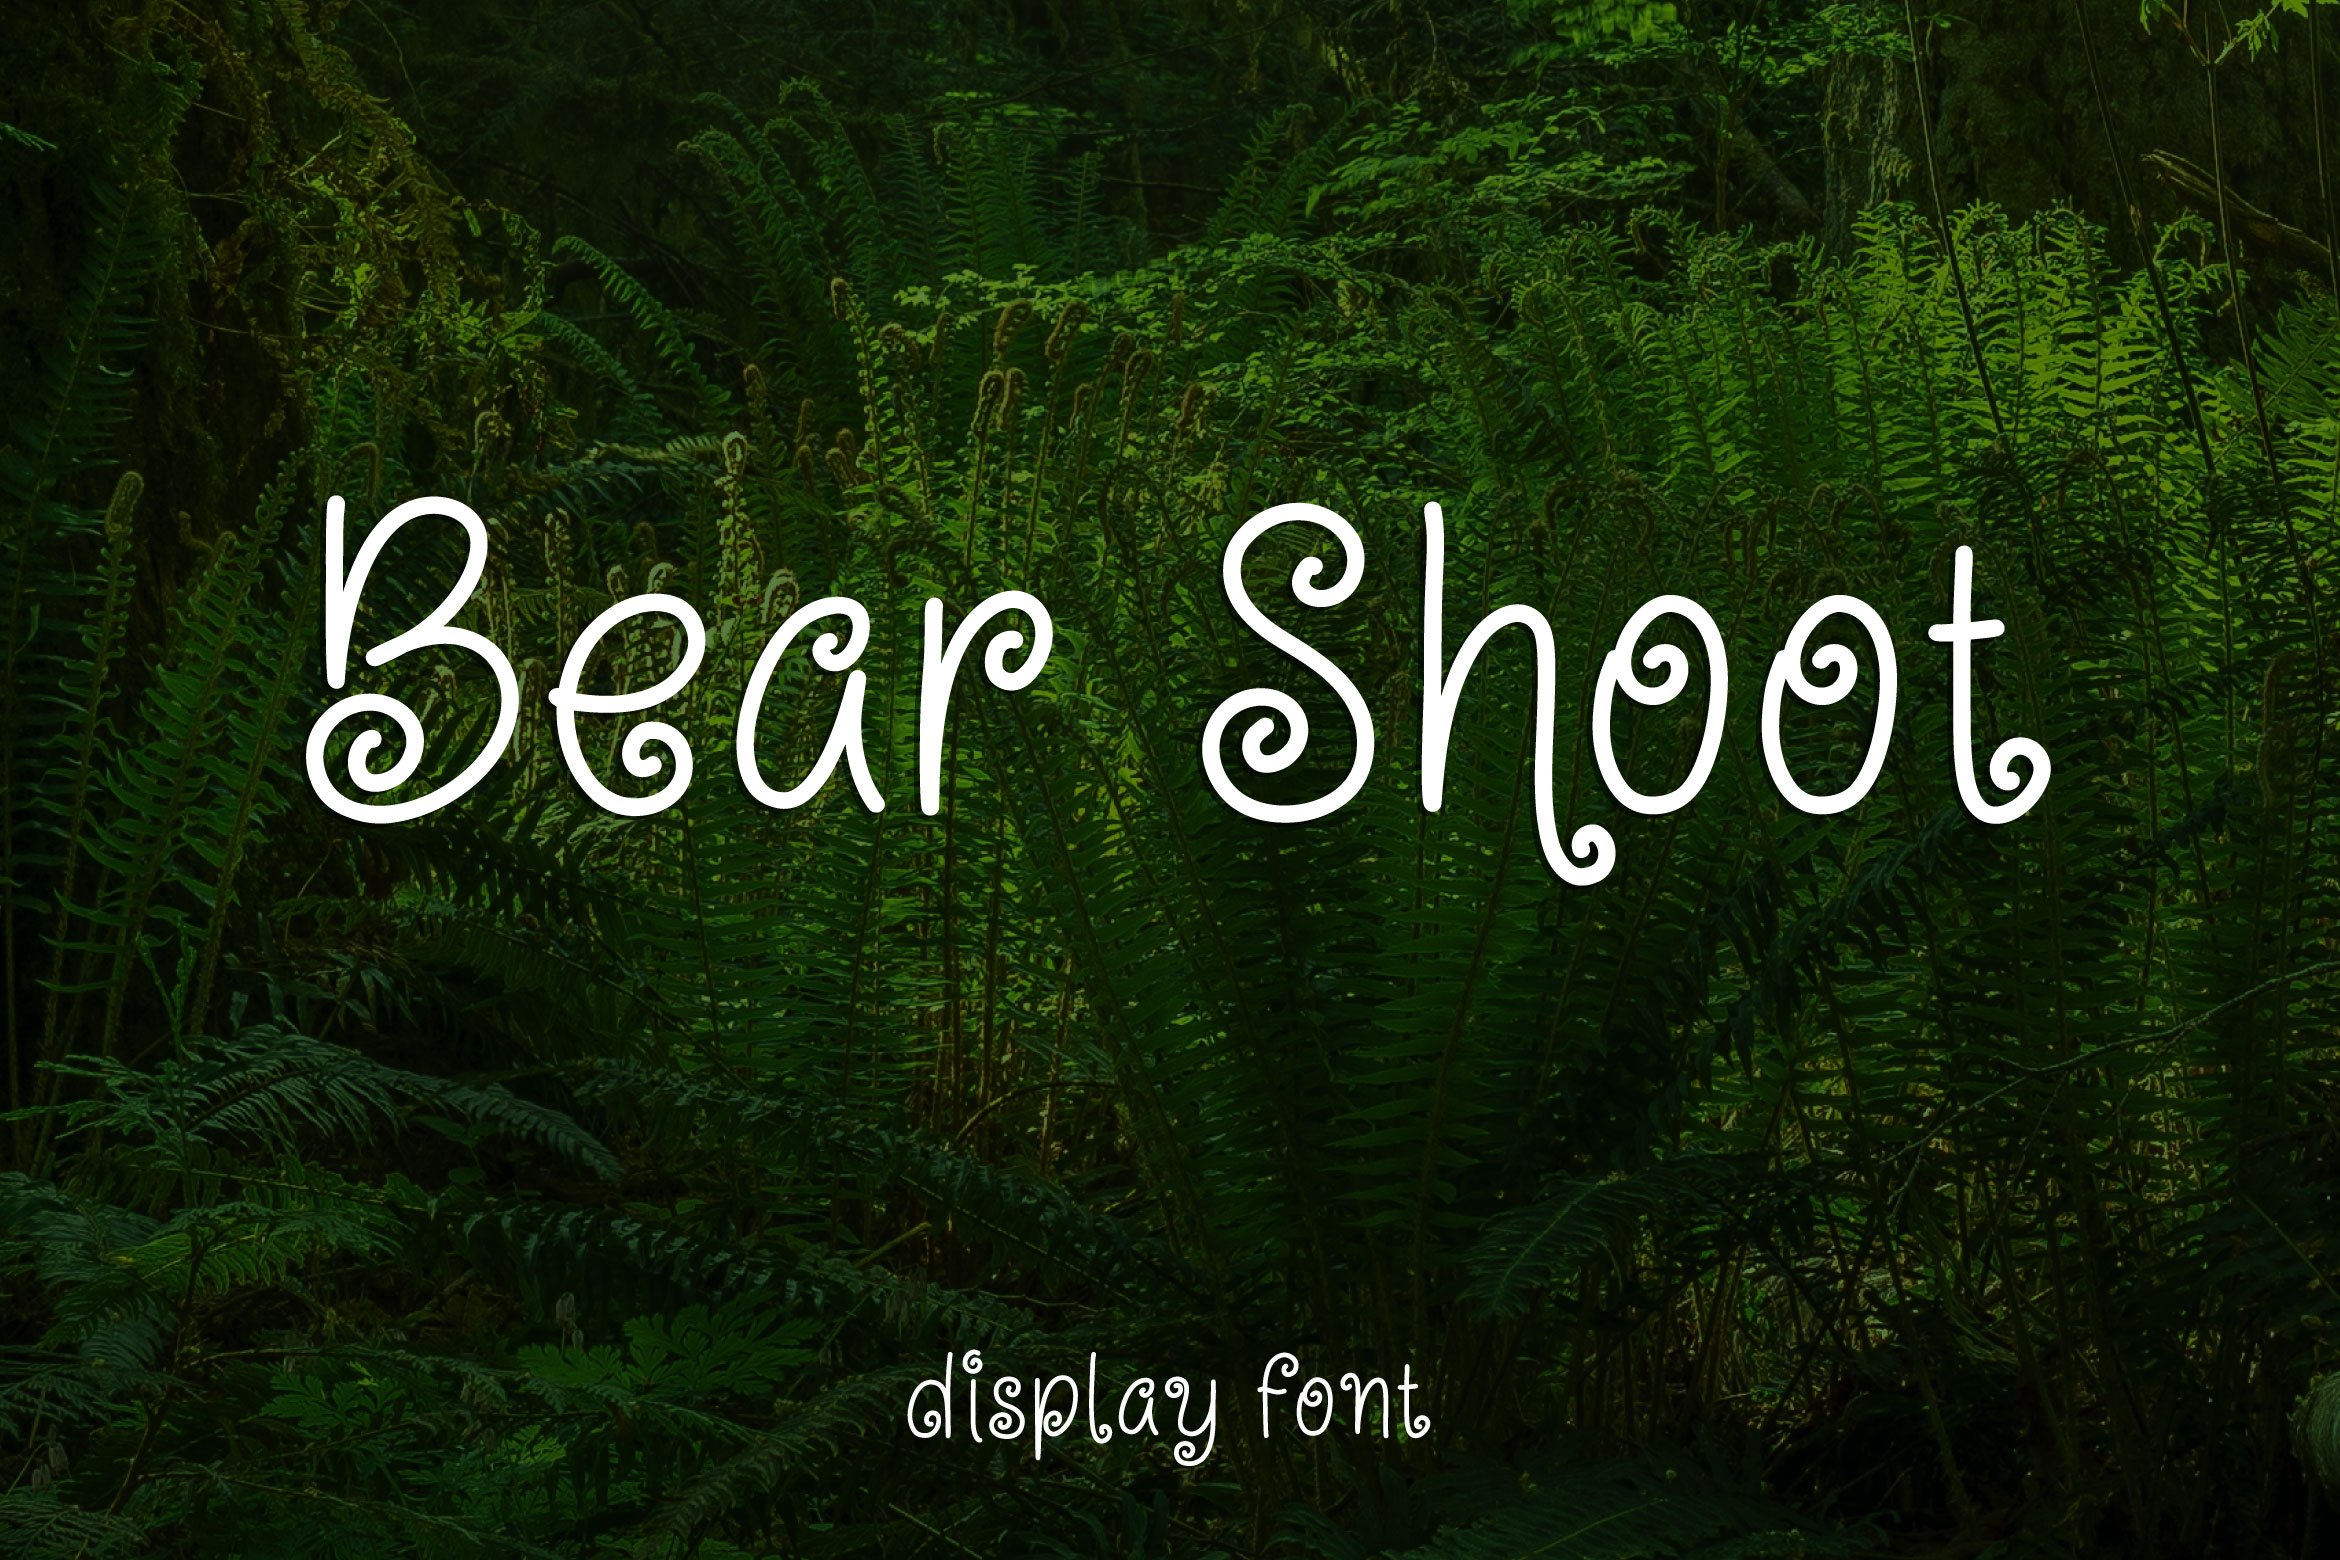 Bear Shoot - Fantasy Display Font cover image.